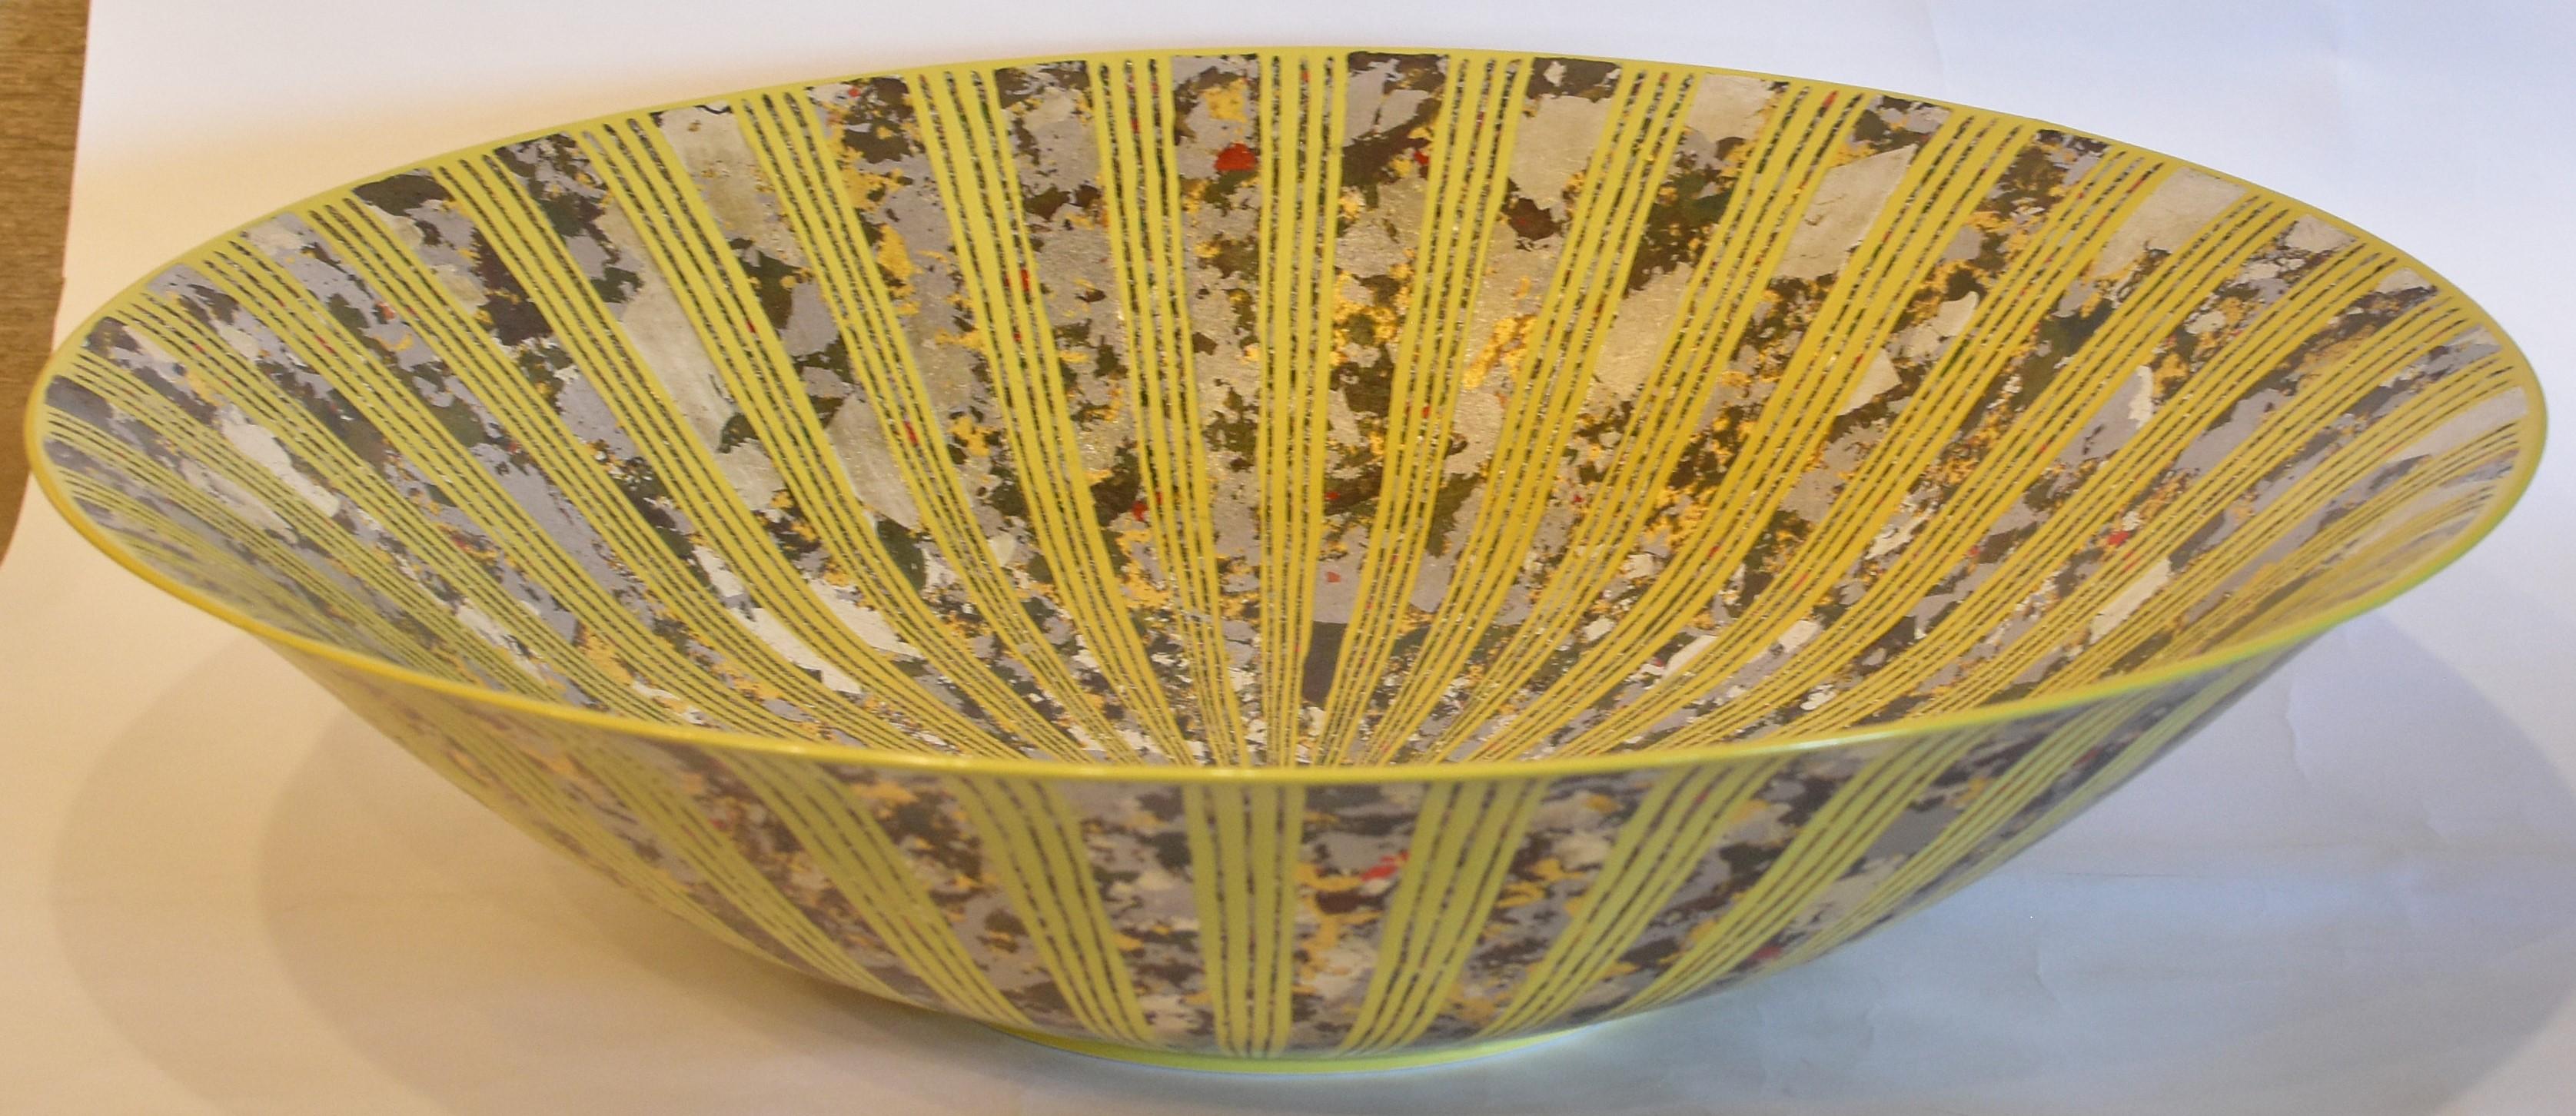 Japonais Vase japonais contemporain en porcelaine jaune et or platine par un maître artiste en vente